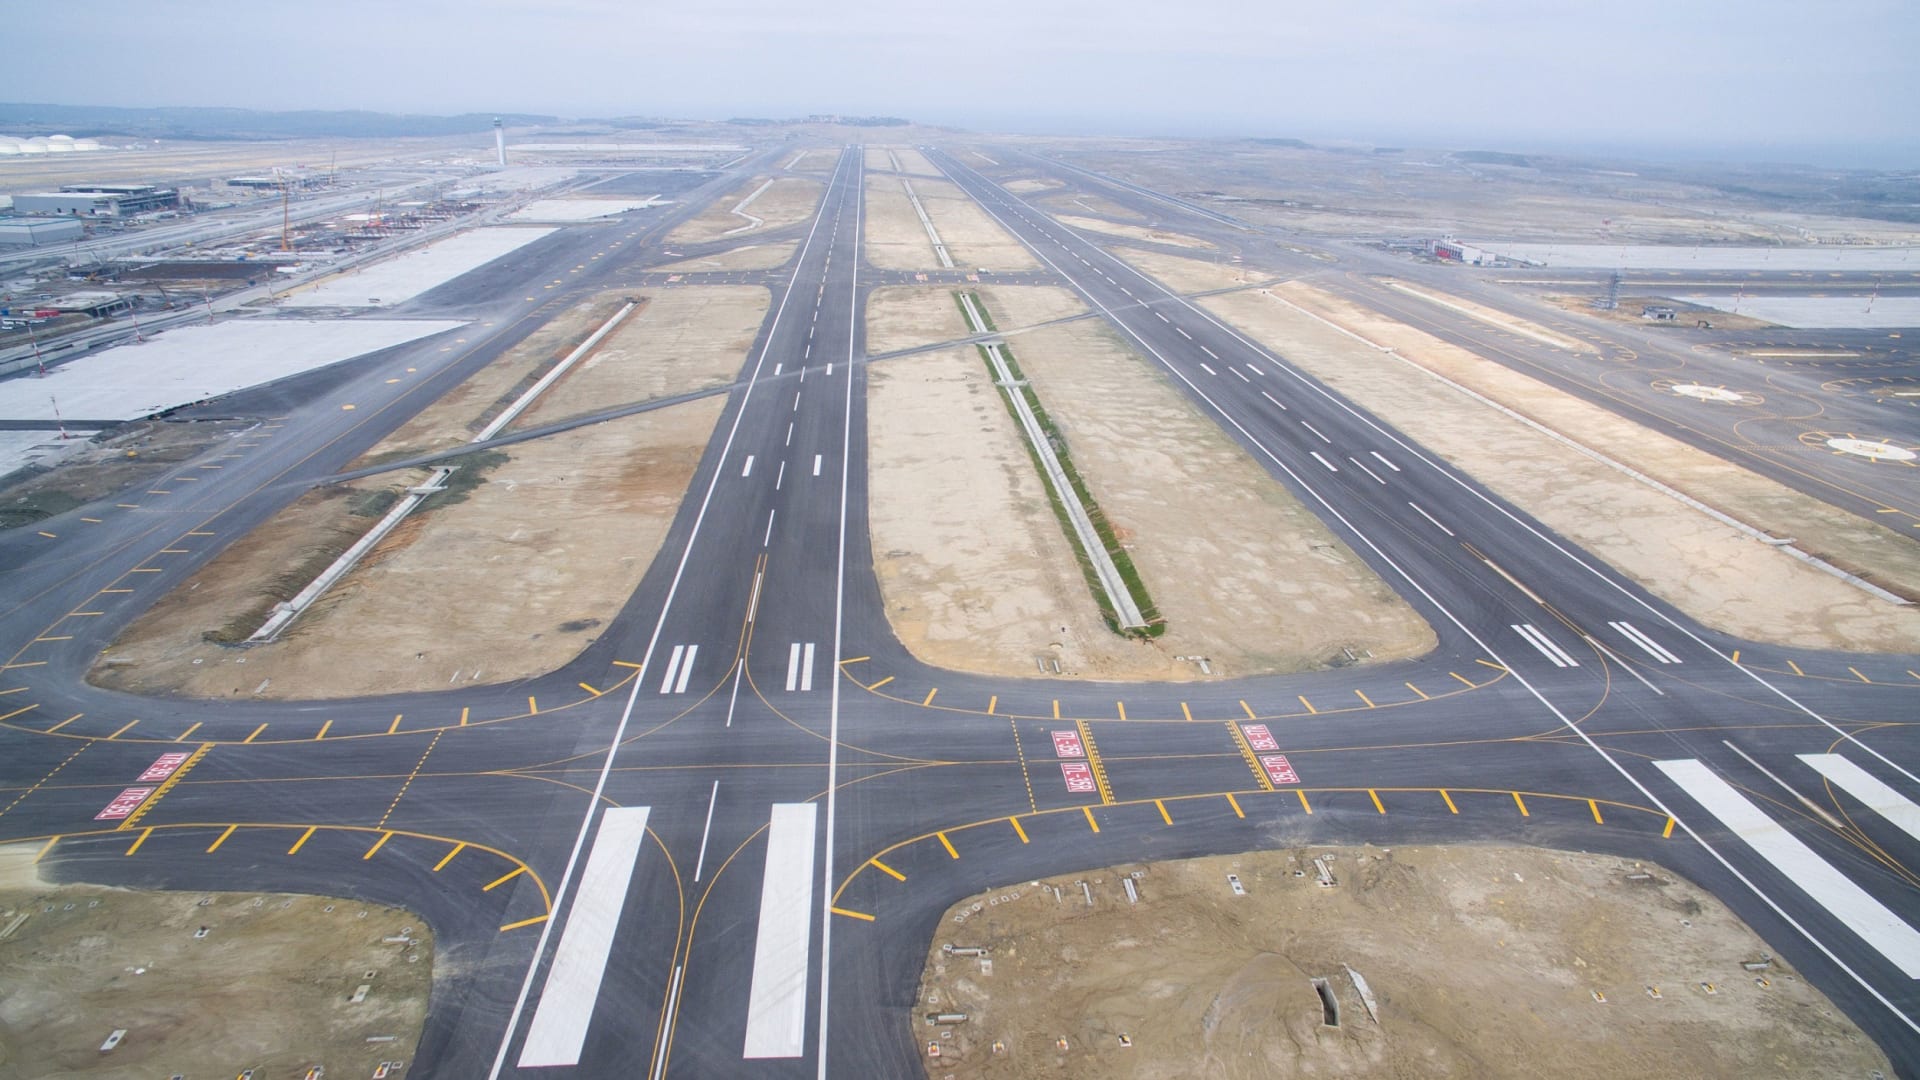 تبلغ مساحة المشروع الإجمالية 76.5 مليون متراً مربعاً. ومن المفترض أن يصبح أكبر مطار تحت سقف واحد في العالم.